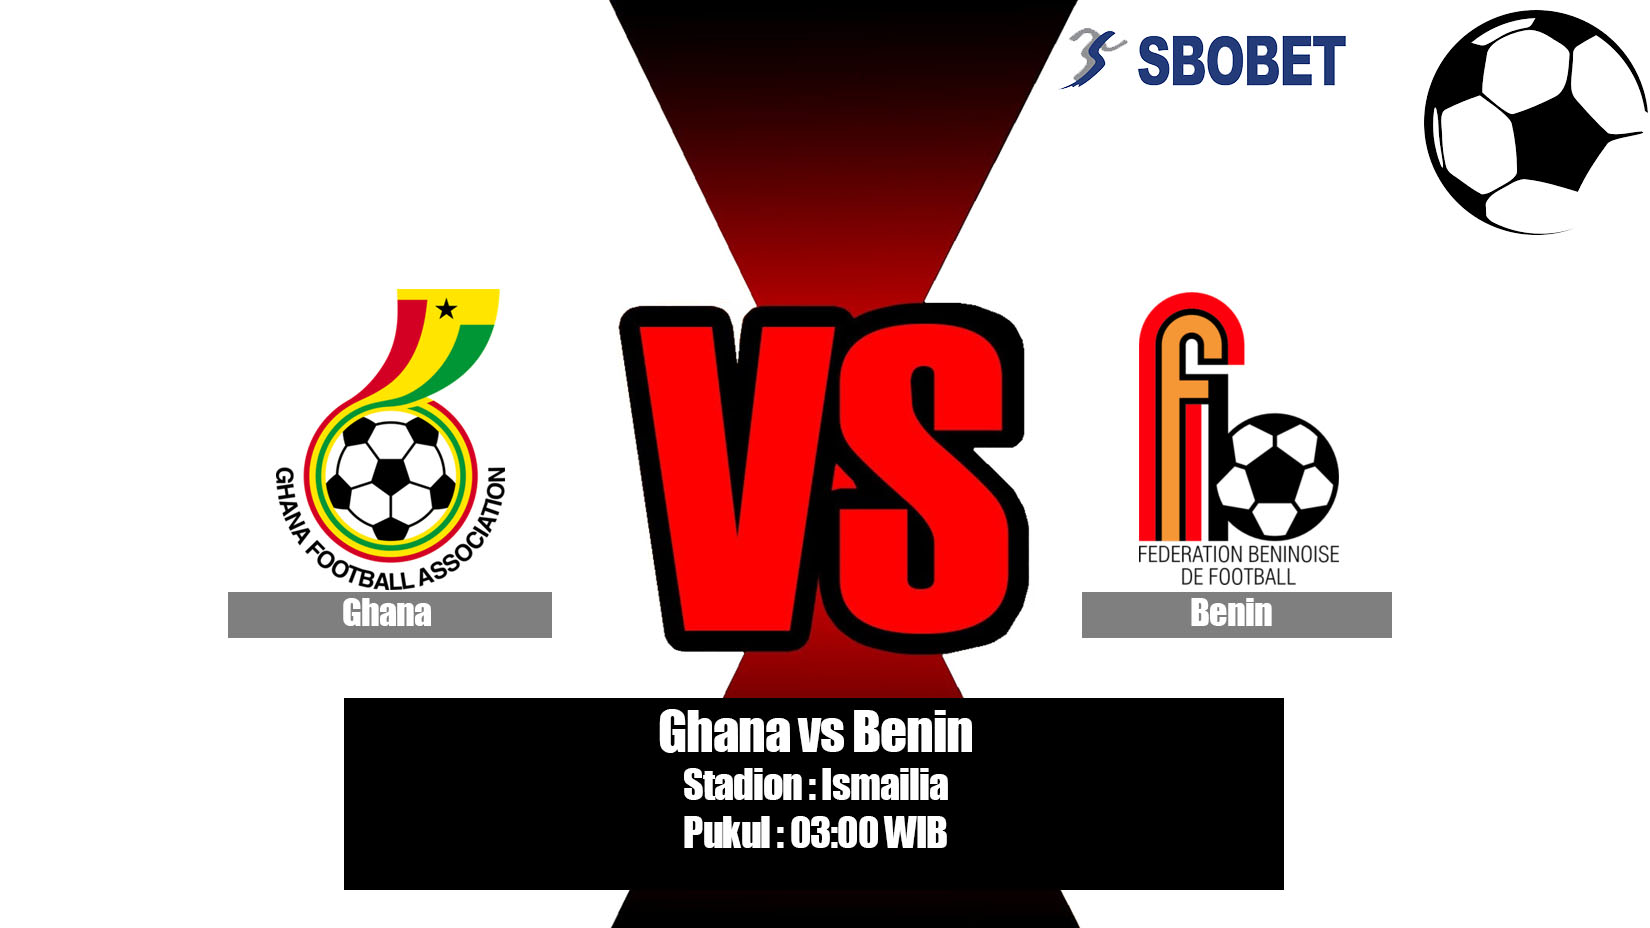 Prediksi Bola Ghana vs Benin 26 Juni 2019